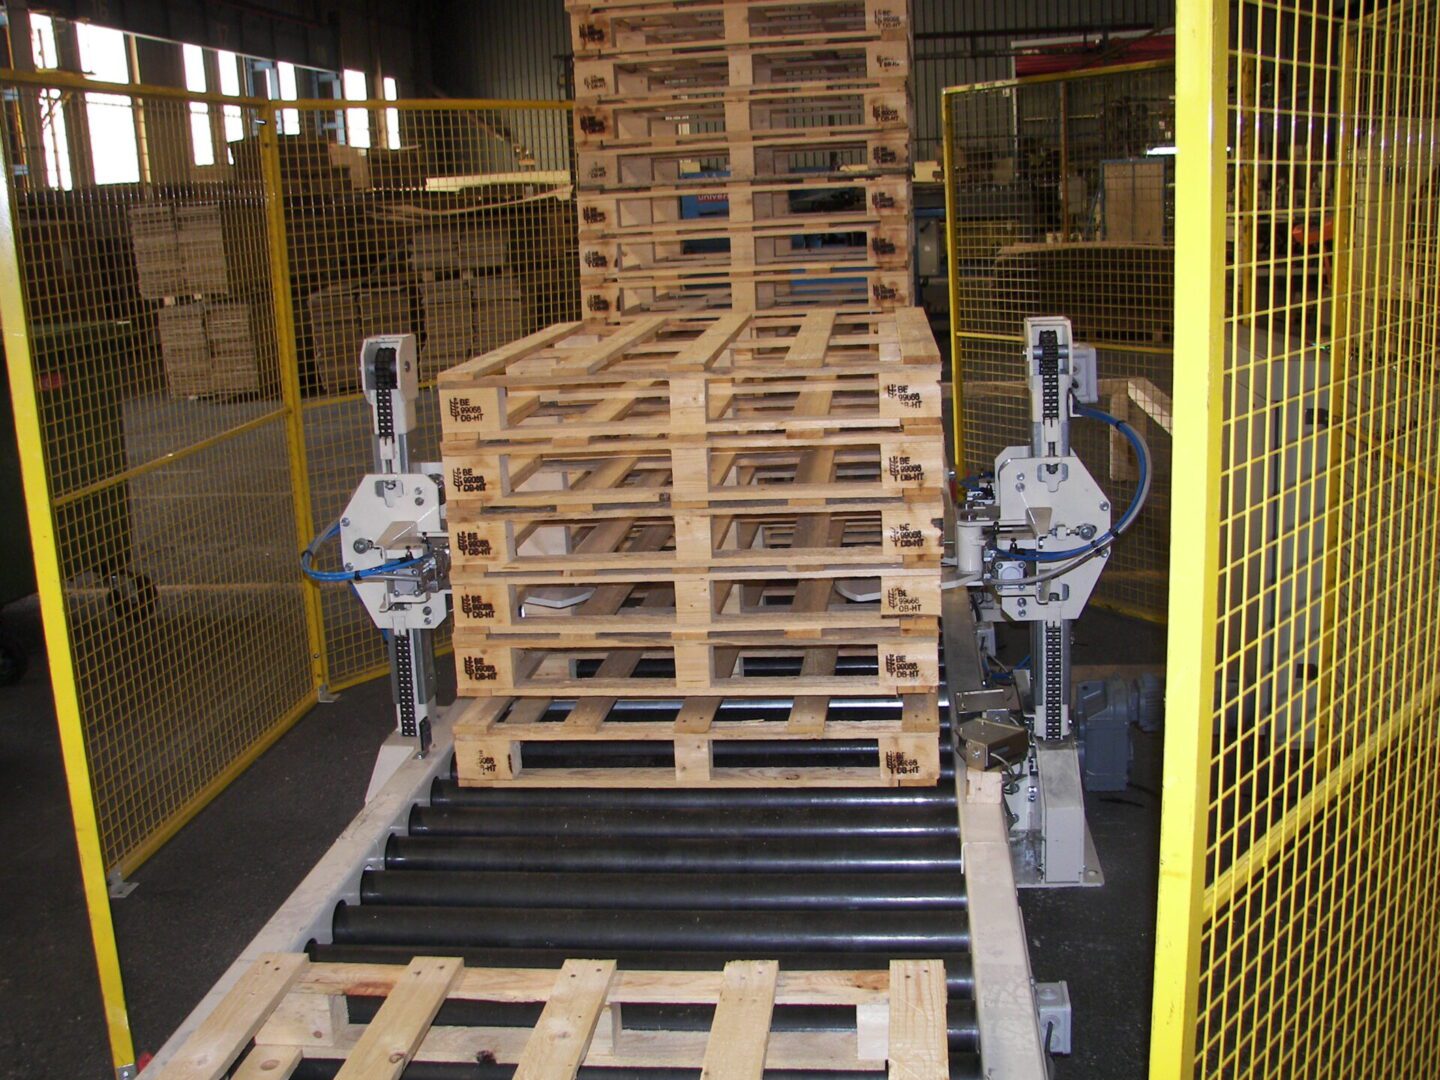 Convoyeur à palettes à rouleaux avec empileur de palettes en bois, utilisé dans un environnement industriel pour le stockage et le transport de palettes.